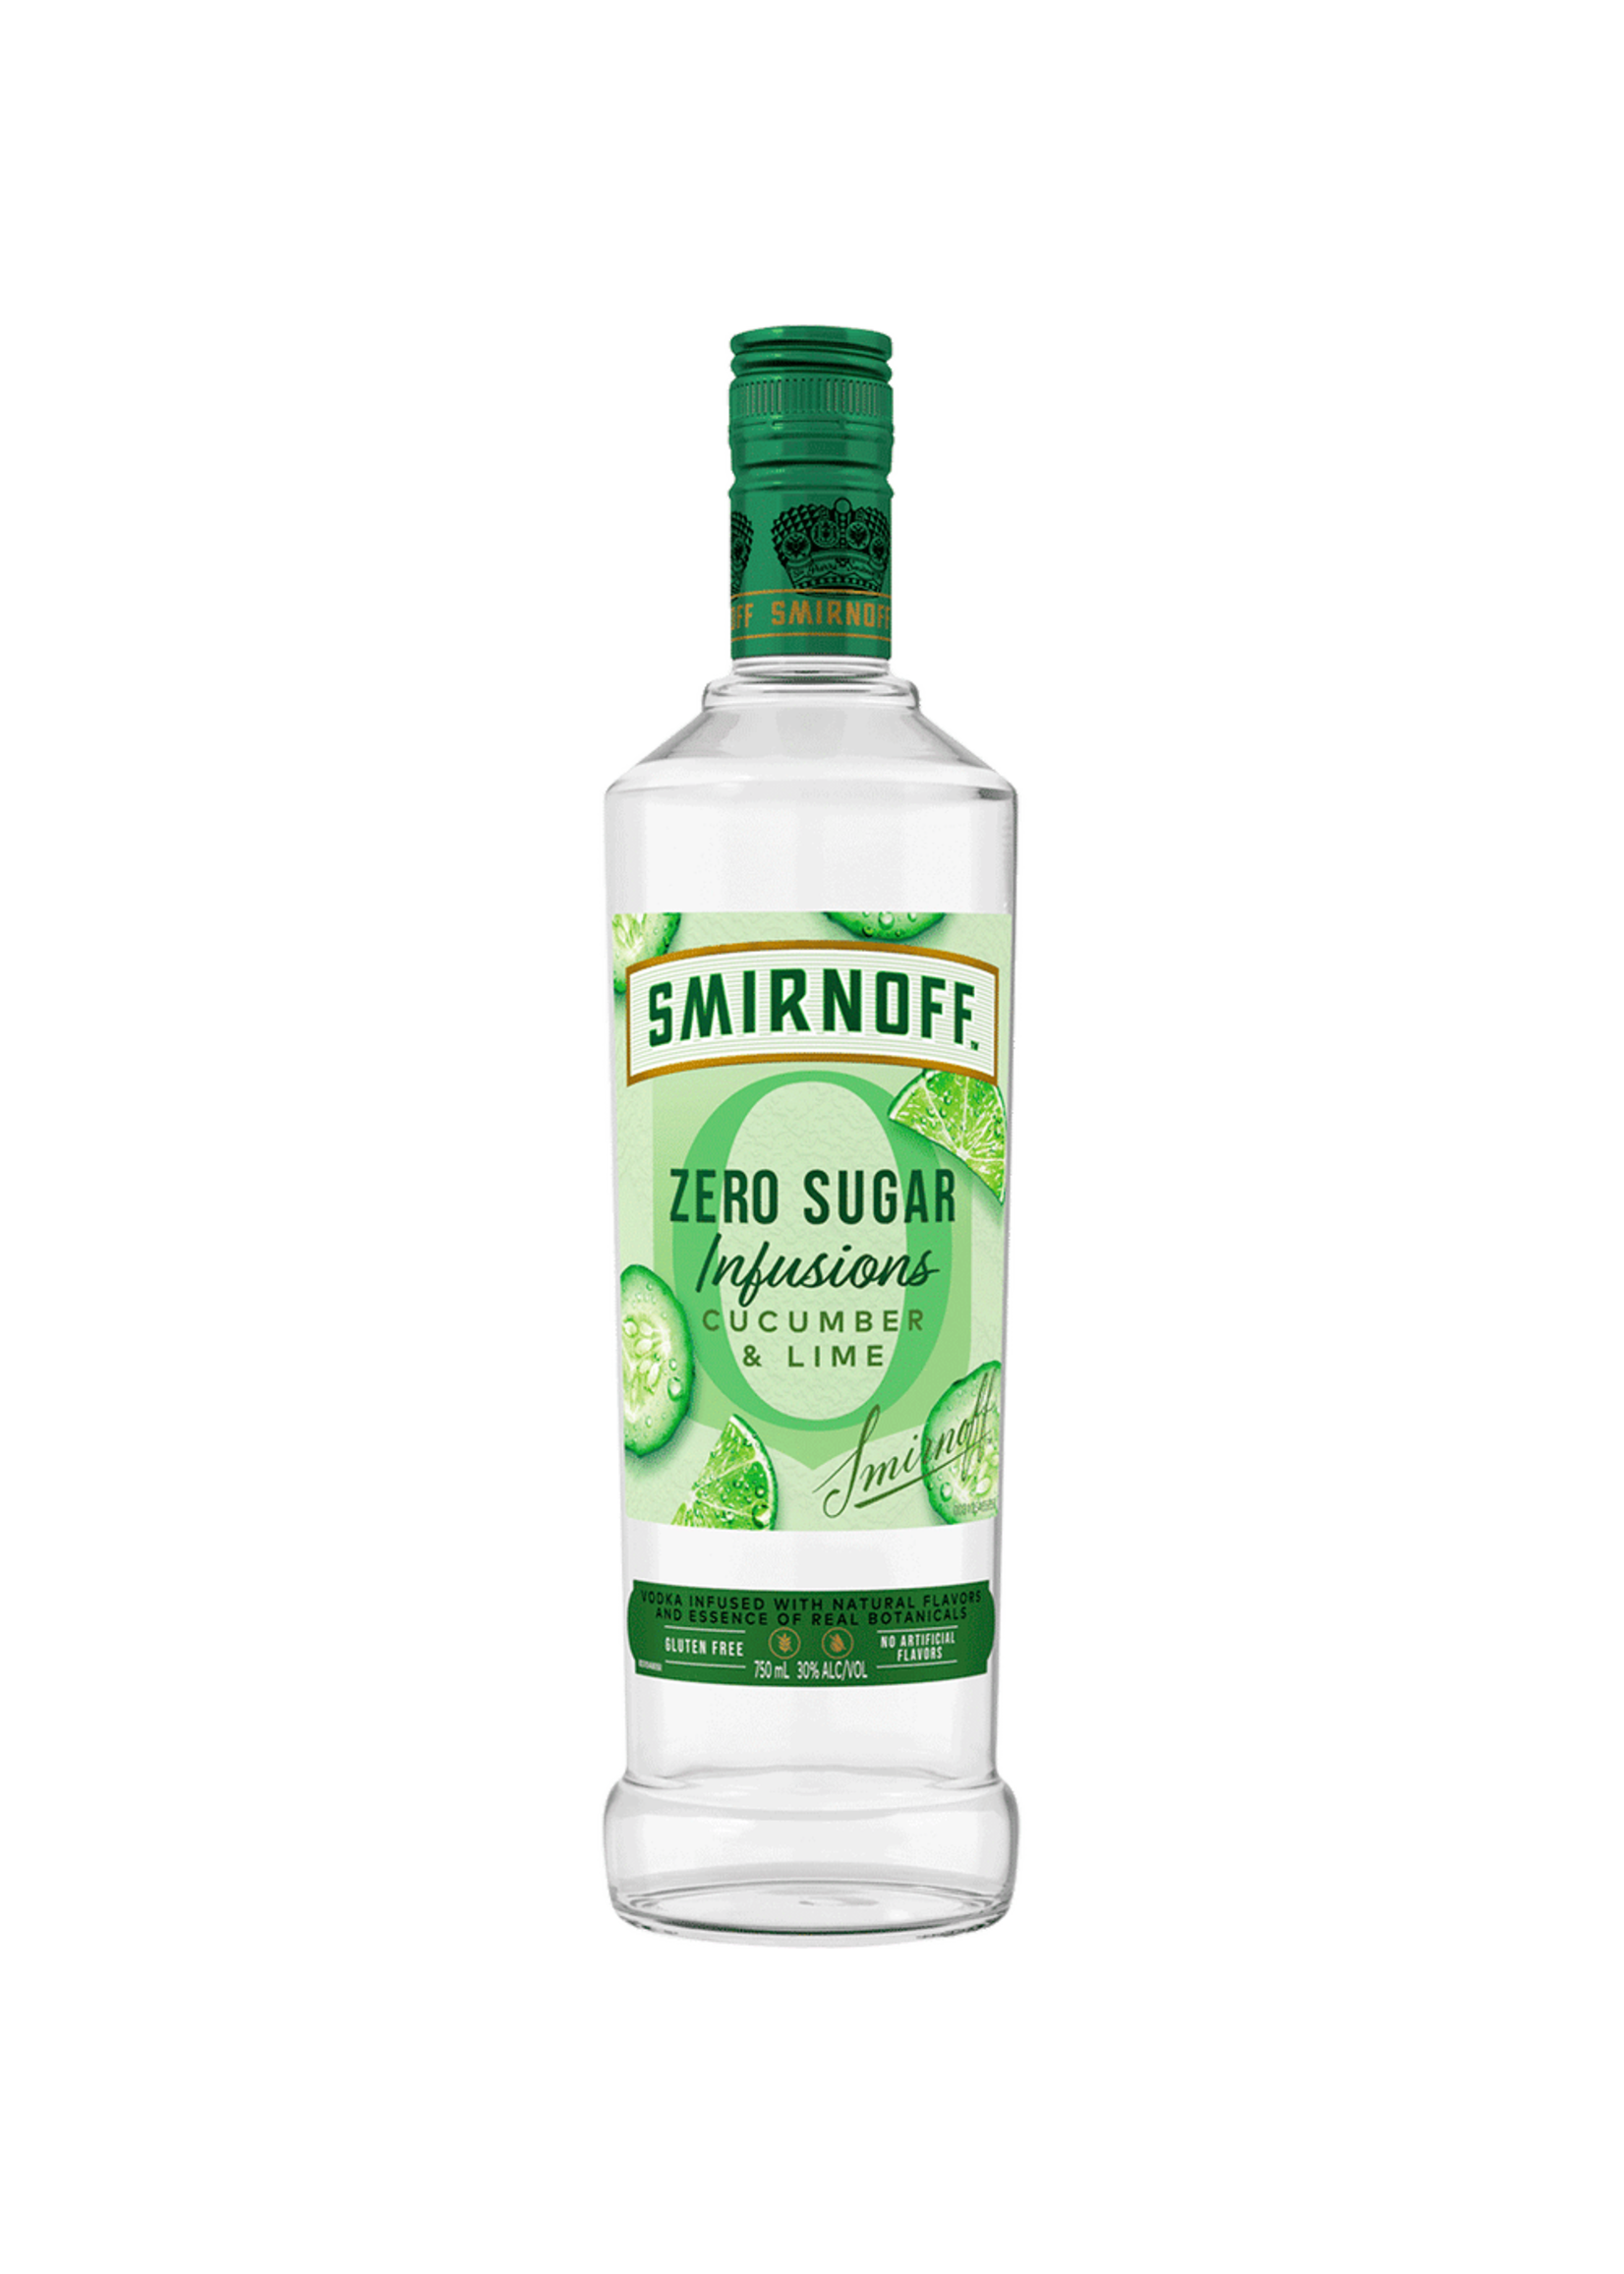 Smirnoff  Vodka Smirnoff Zero Sugar Cucumber Lime 60Proof 750ml